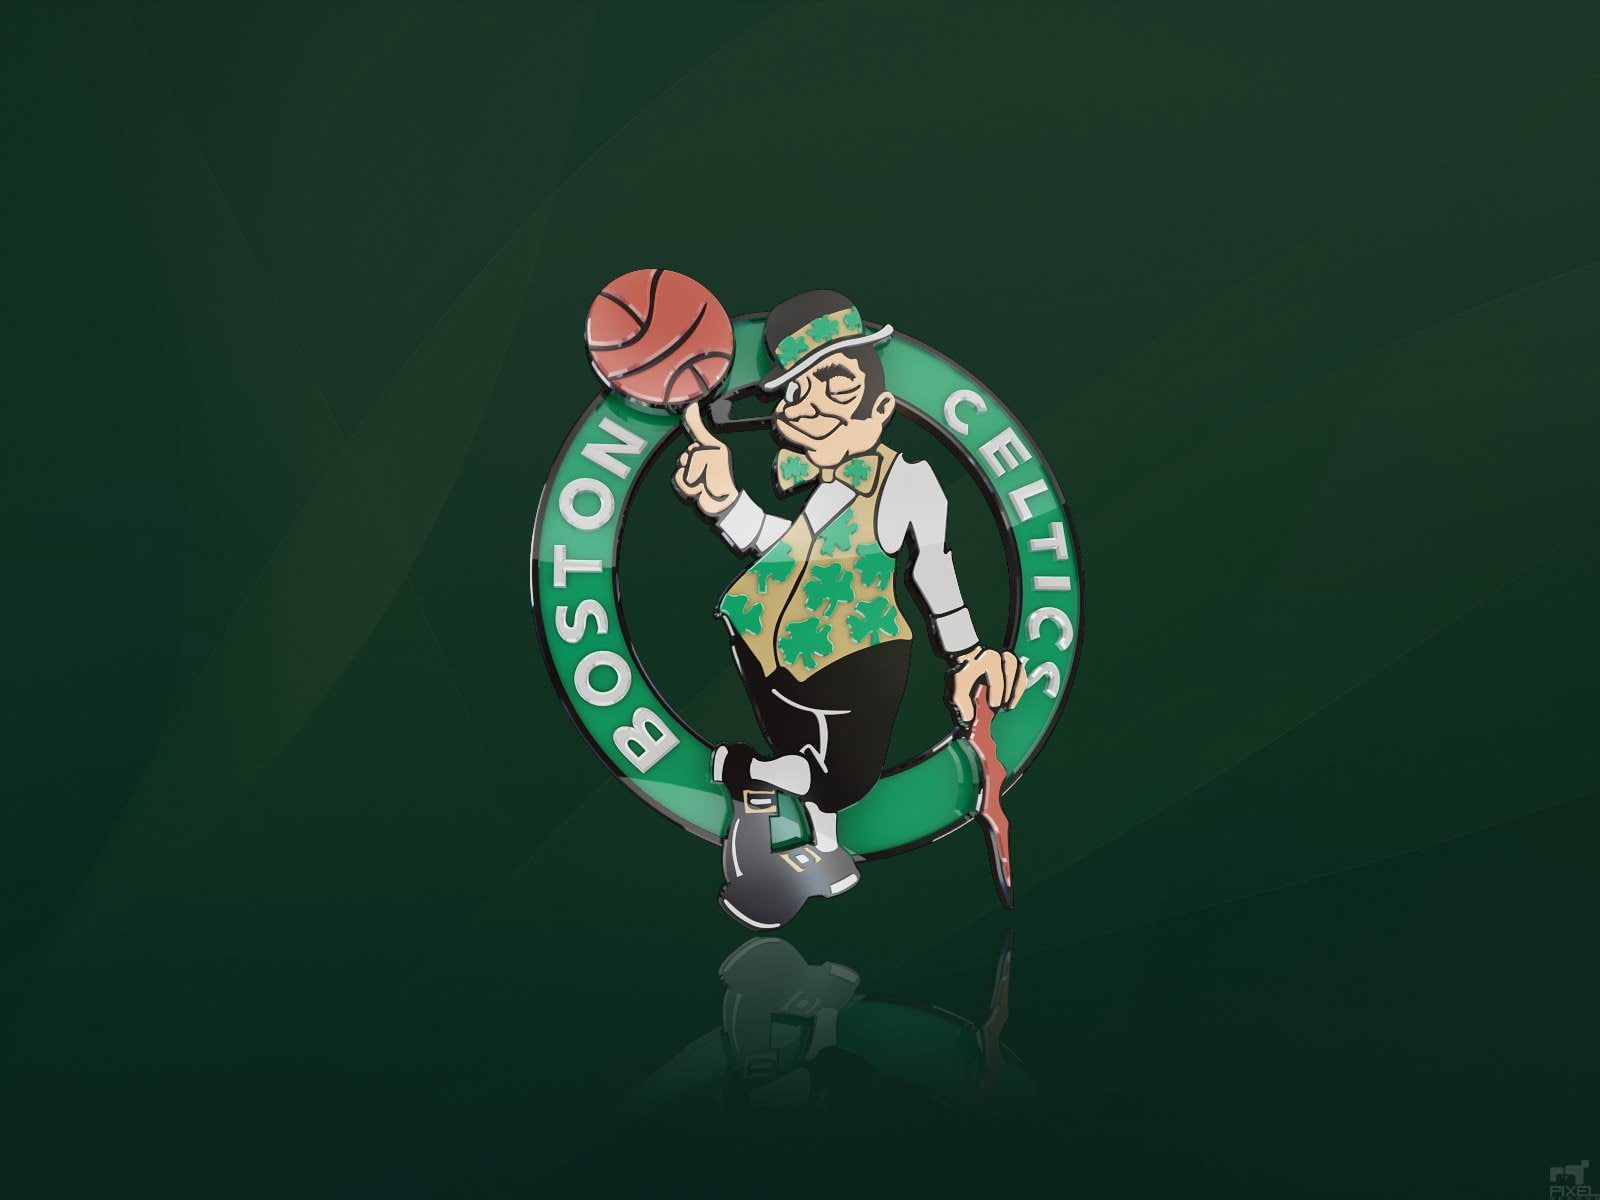 Boston, Celtics, logos, green color, circle, time, copy space